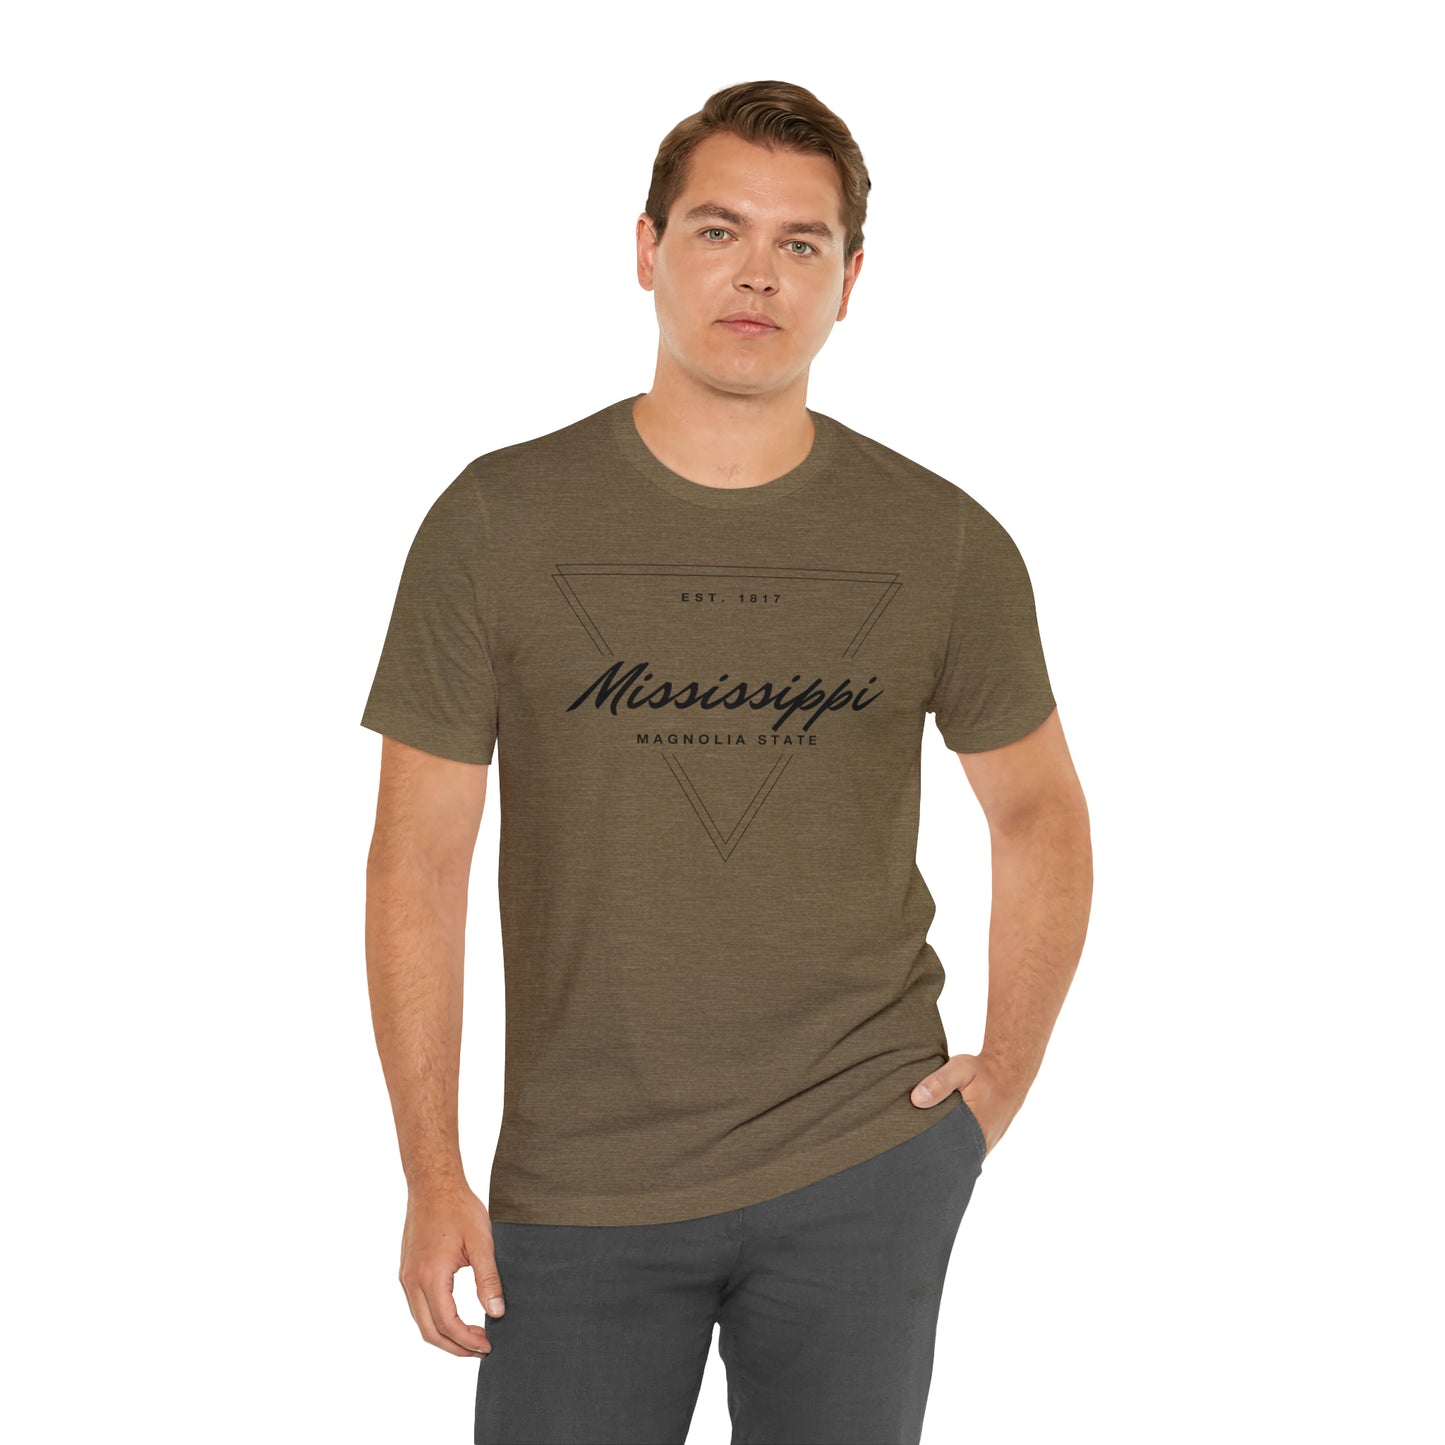 Mississippi Geometric Shirt